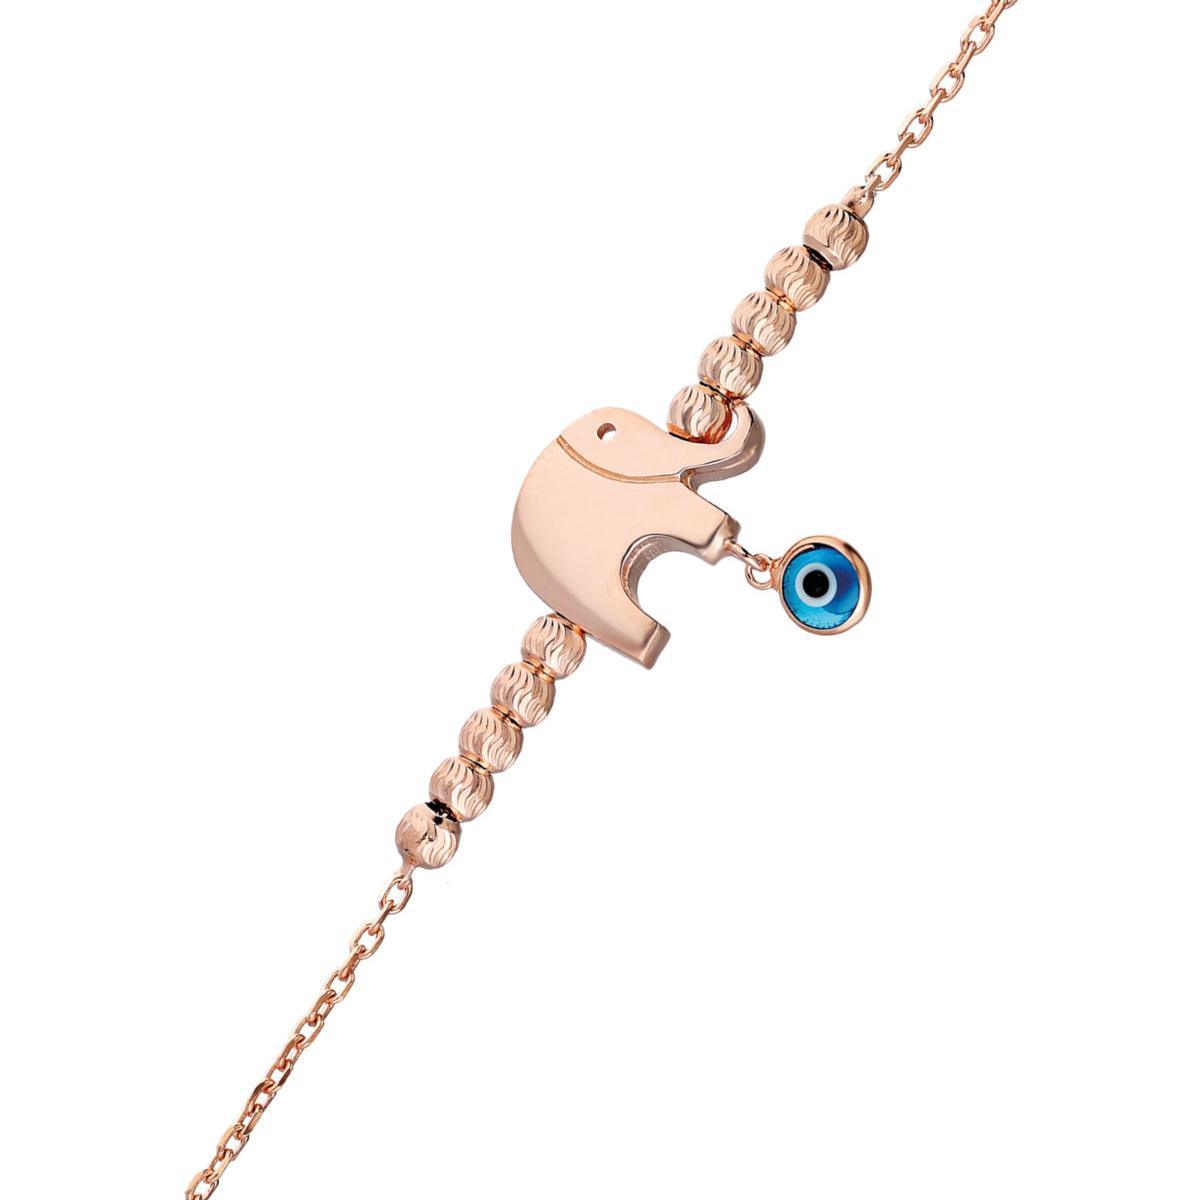 Elephant Lucky Bracelet Gold • Elephant Charm Bracelet • Gift For Wife - Trending Silver Gifts